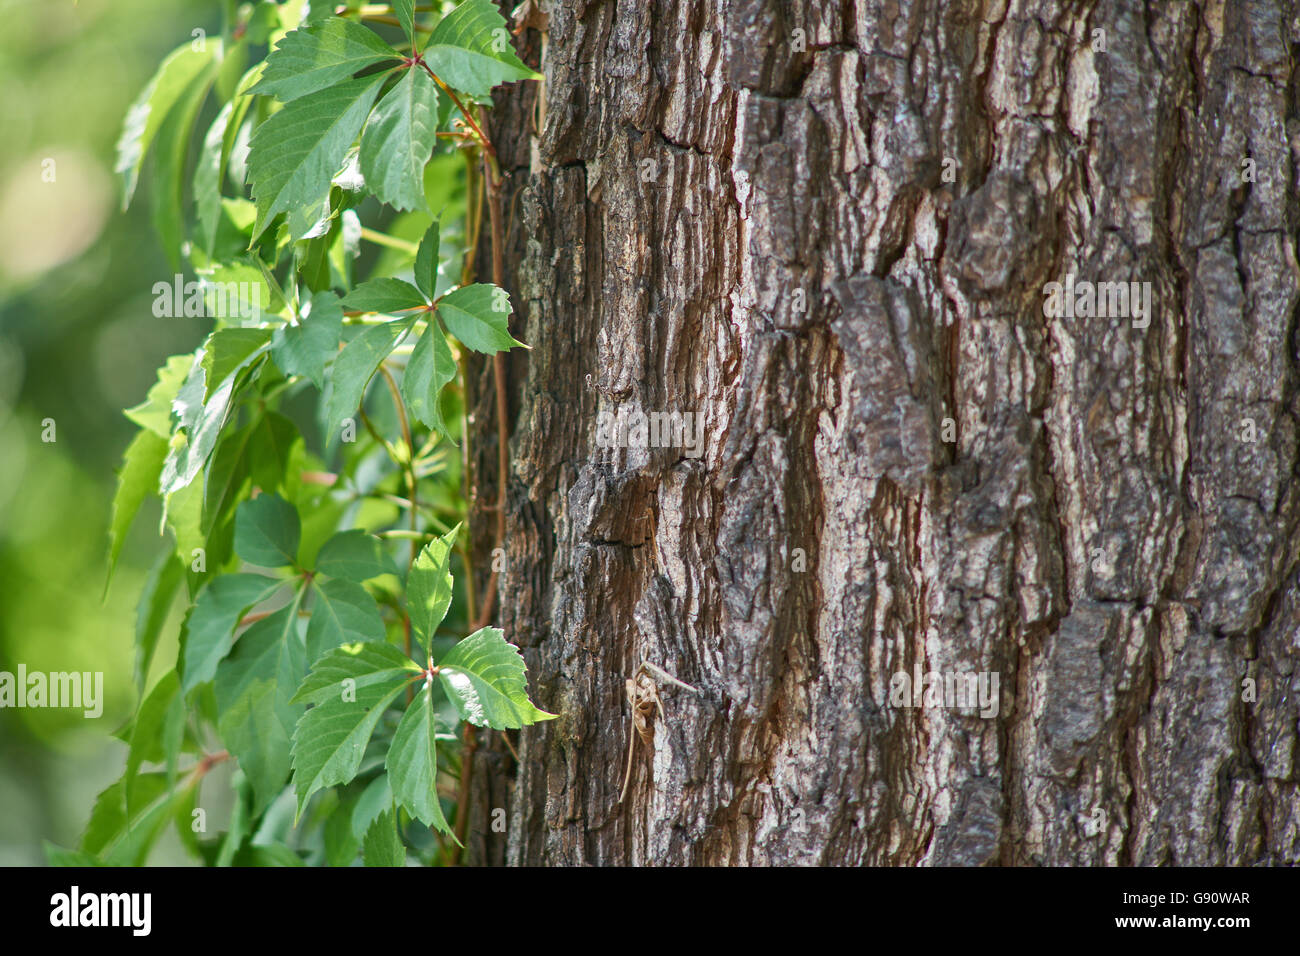 Virginia creeper feuilles vertes sur le vieux tronc d'arbre écorce de chêne Banque D'Images